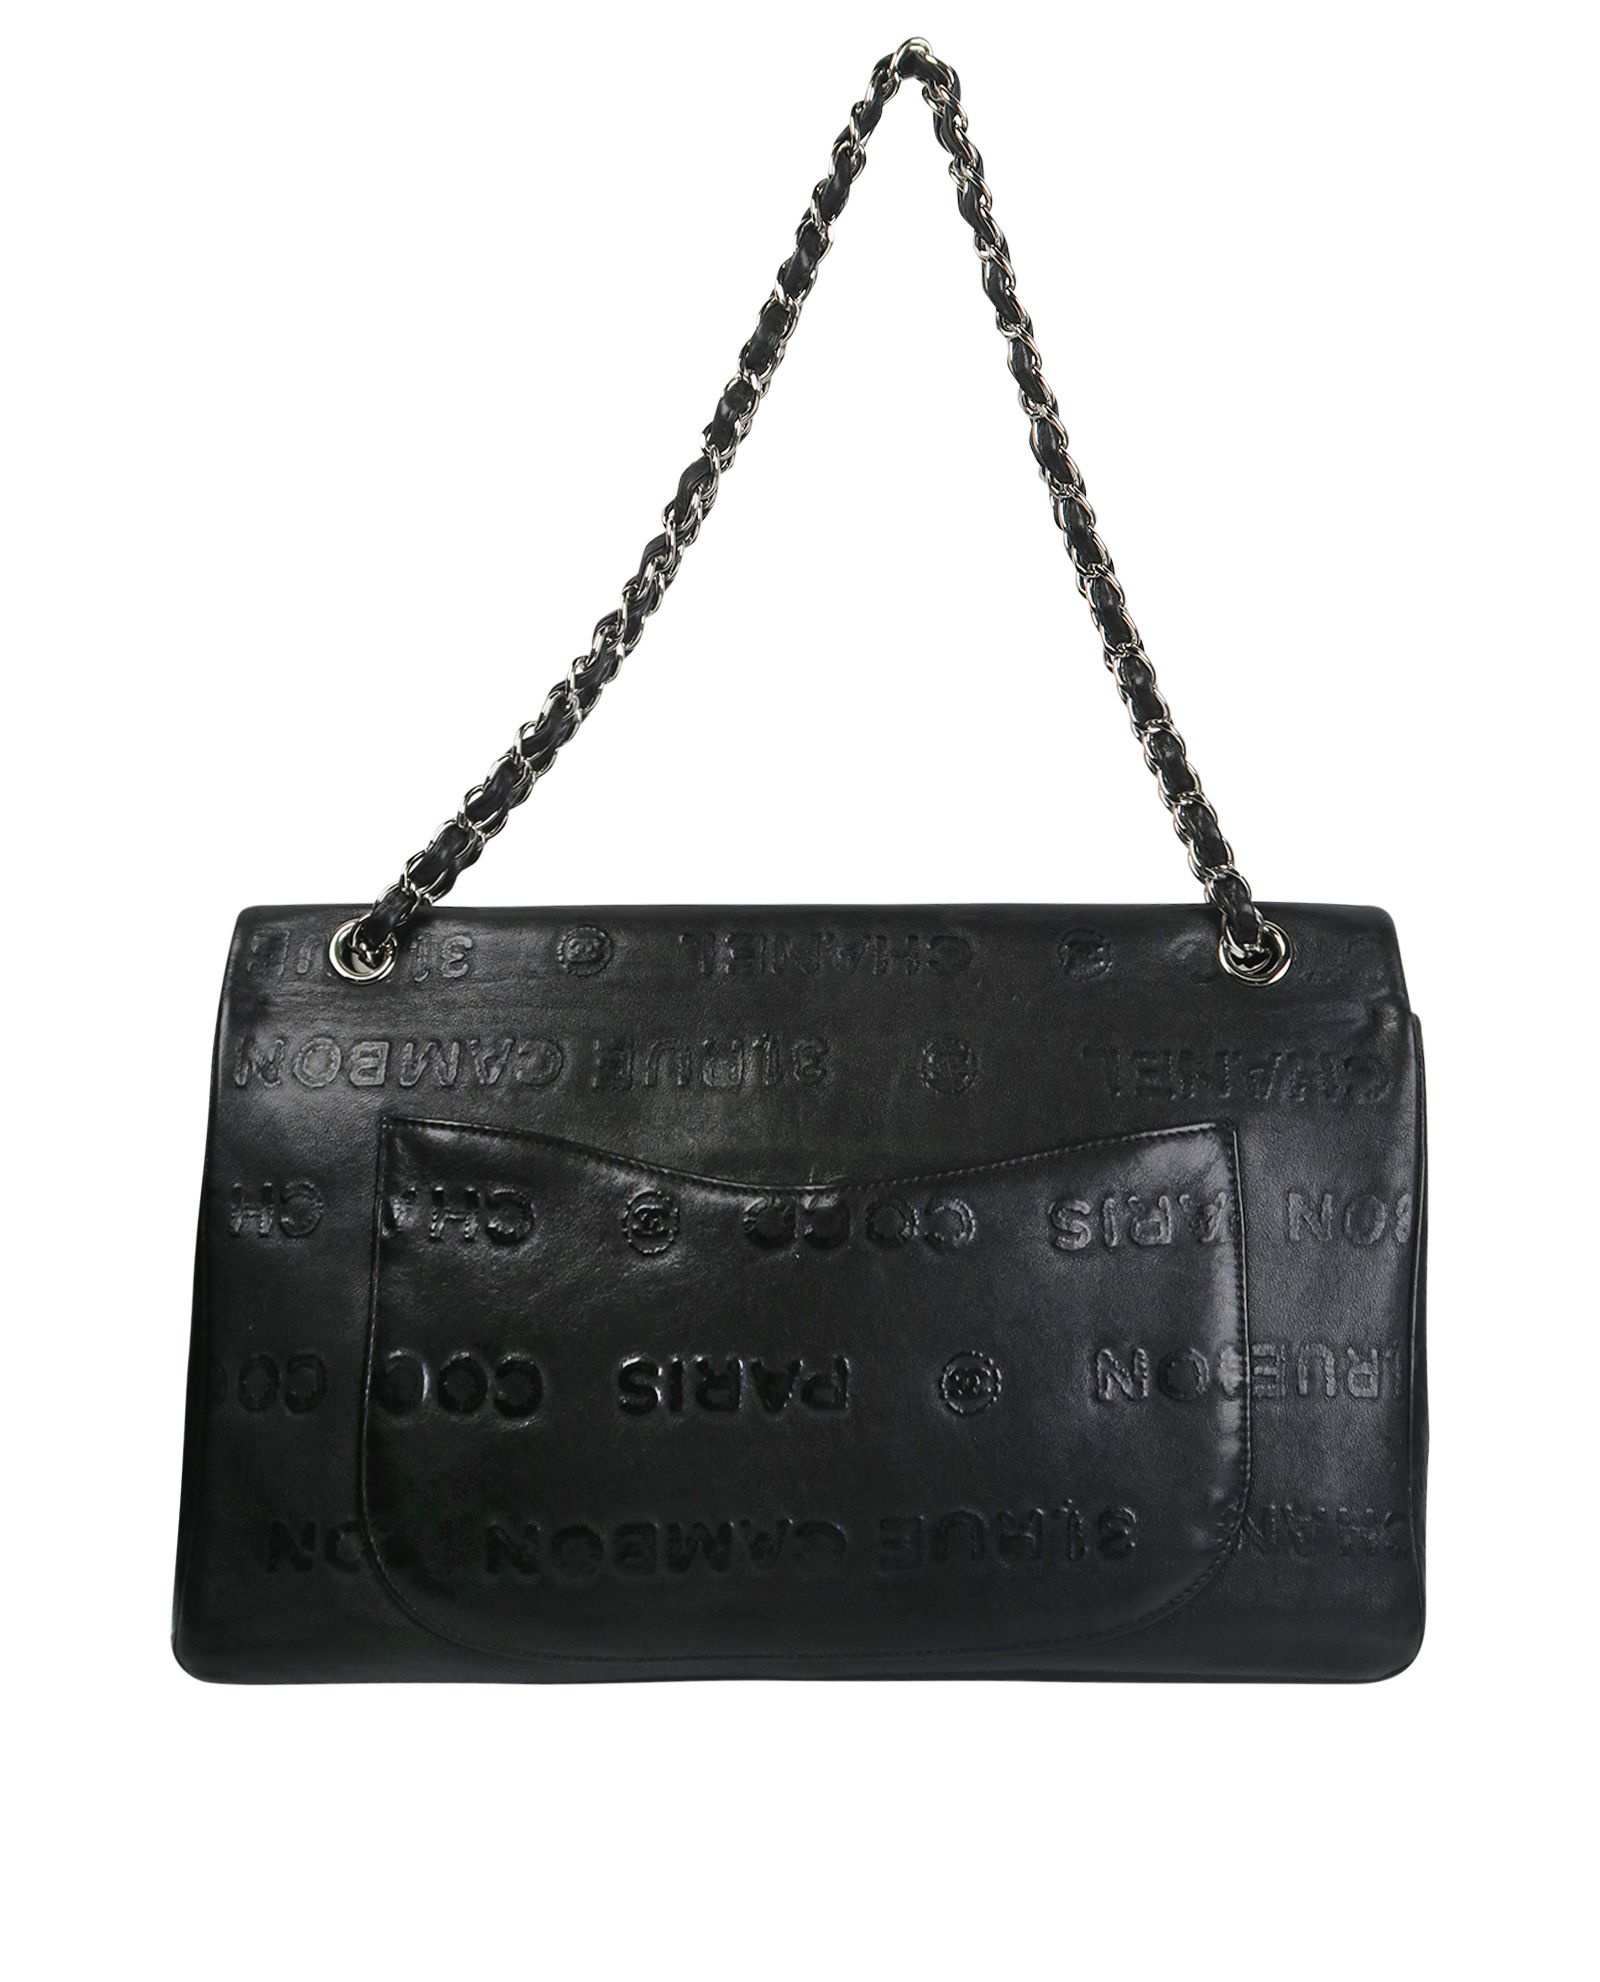 Chanel Rue Cambon 228 Reissue Handbag